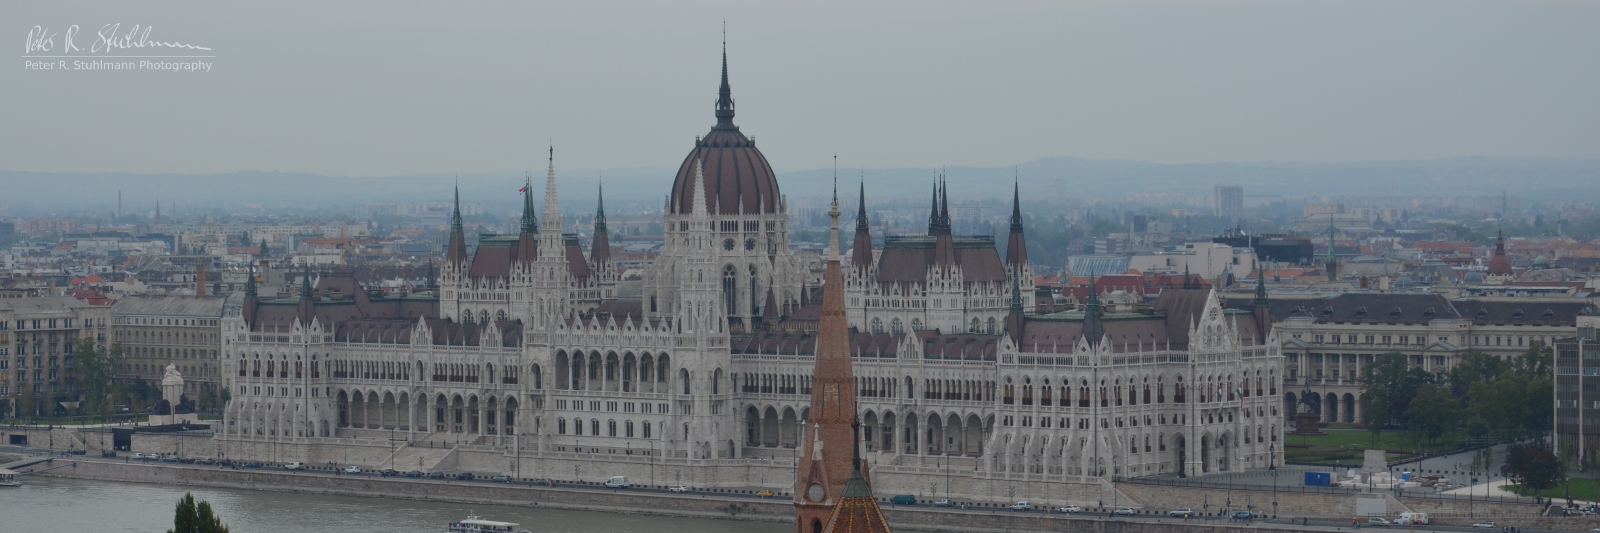 Ungarisches Parlamentsgebäude an der Donau, Budapest, Ungarn